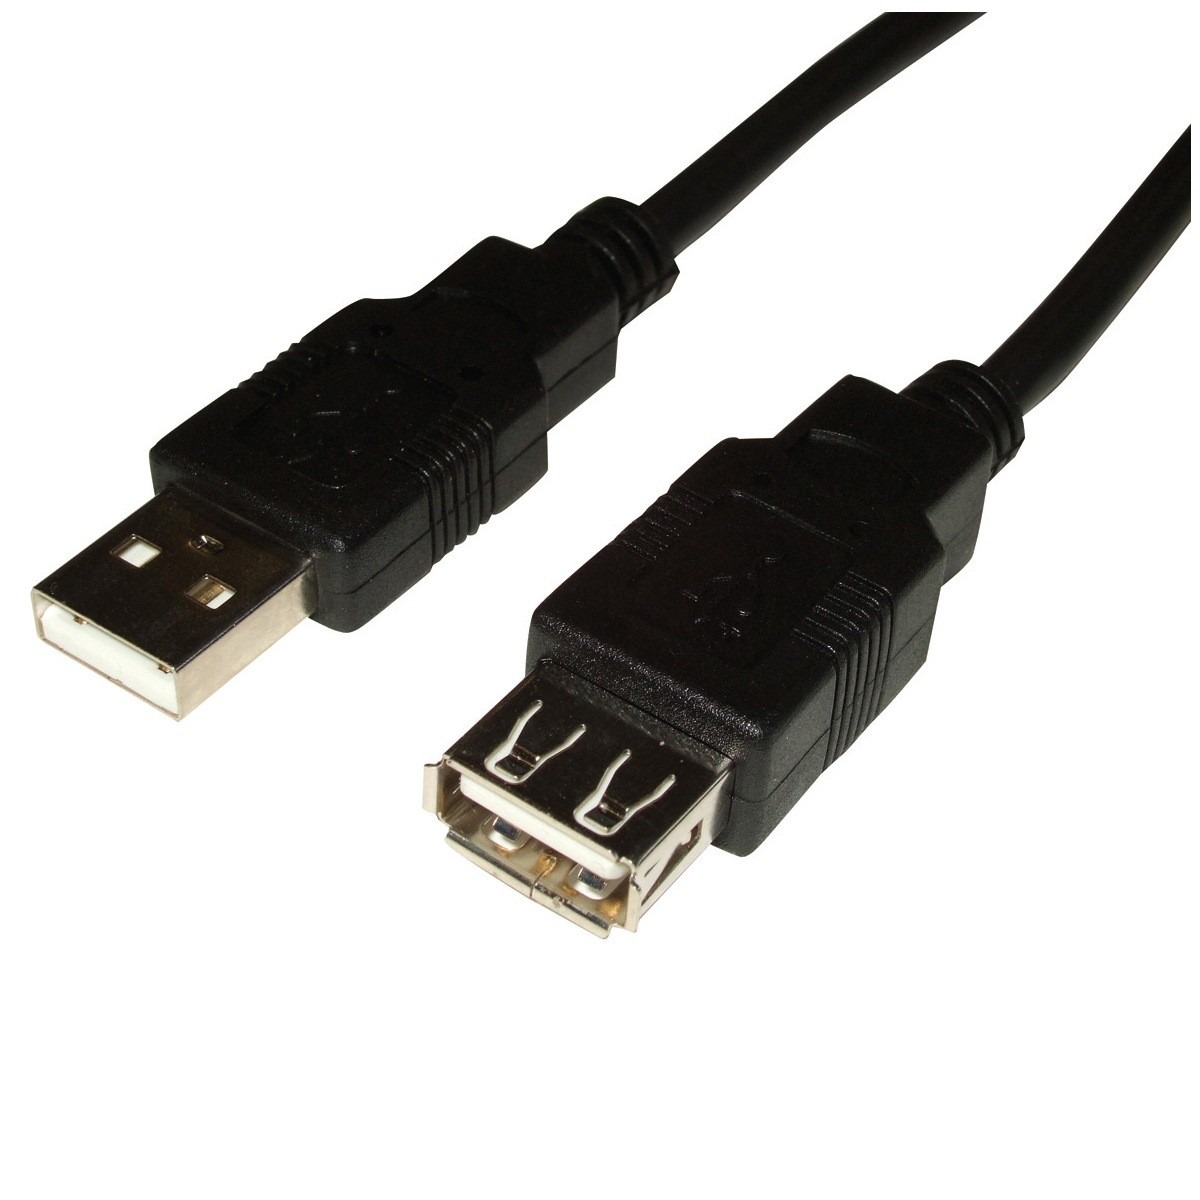 Plano y Negro Cable de extensión Modular 2,00 m RJ10  Cable: 4 Conductores  Conector RJ10  Hembra 4P4 C 4P4 C   asignación: 1: 1 